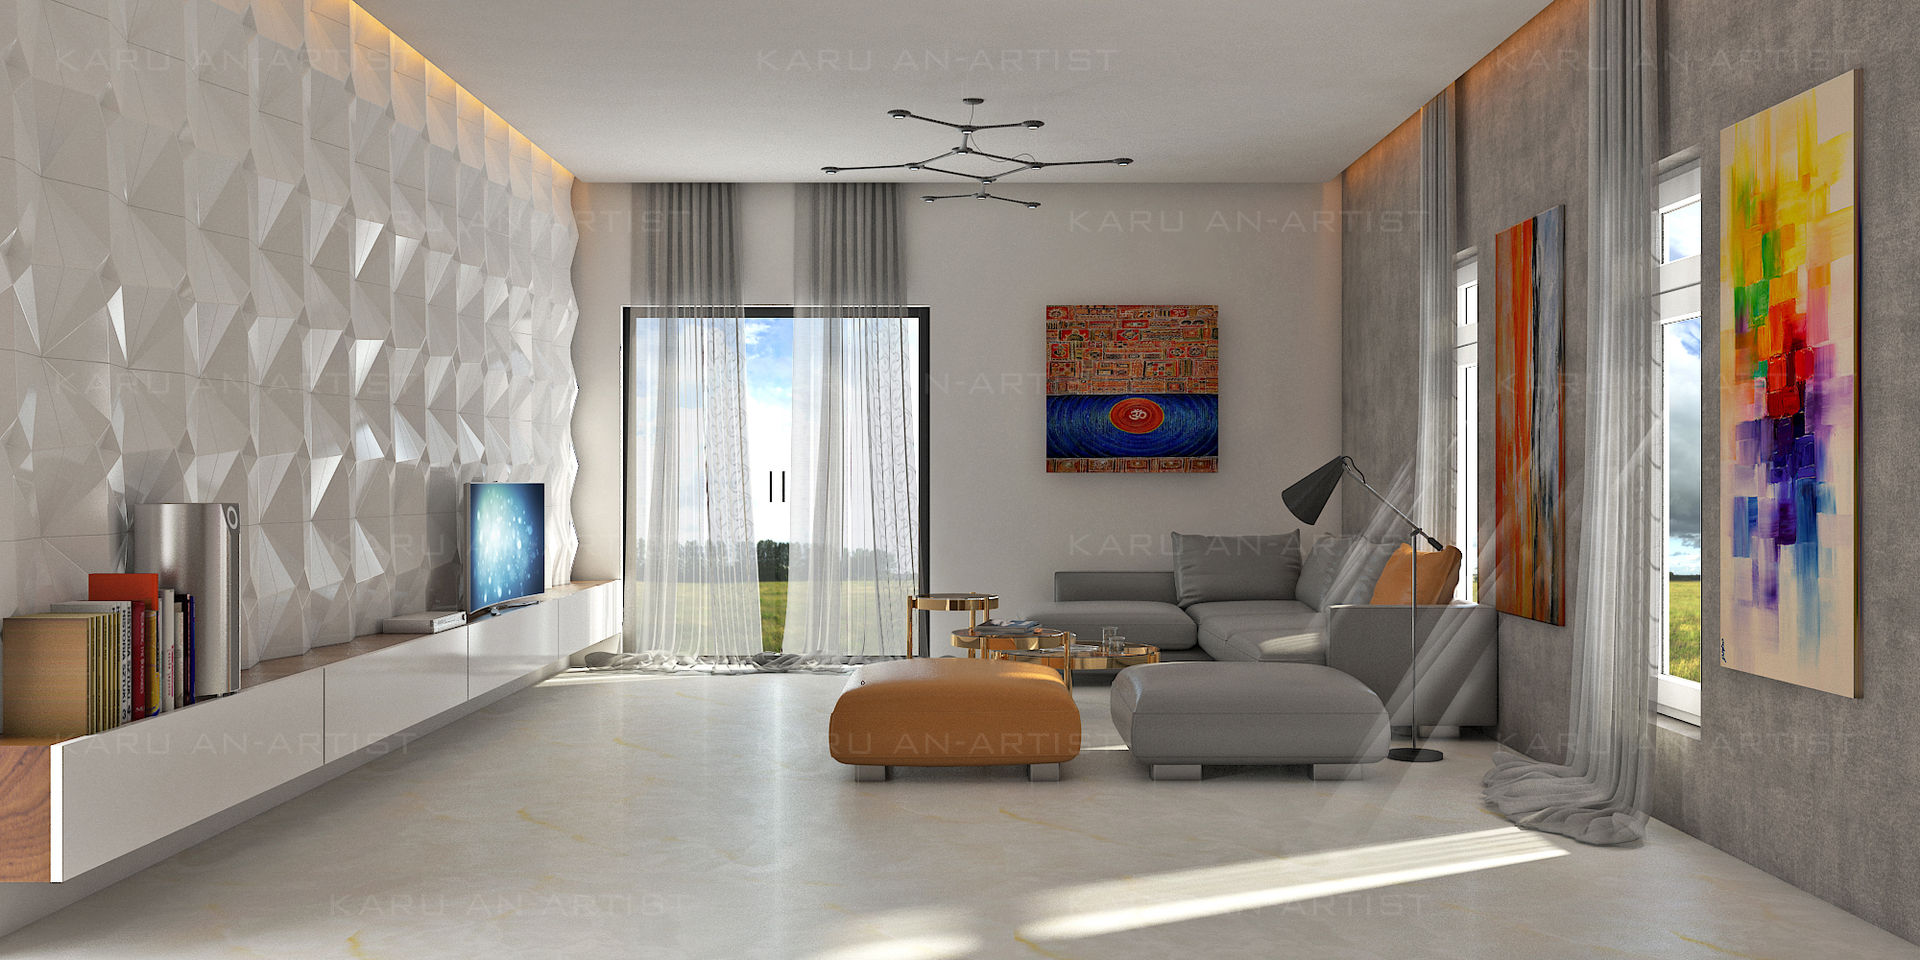 A Modern Living Room, KARU AN ARTIST KARU AN ARTIST Salas de estar modernas